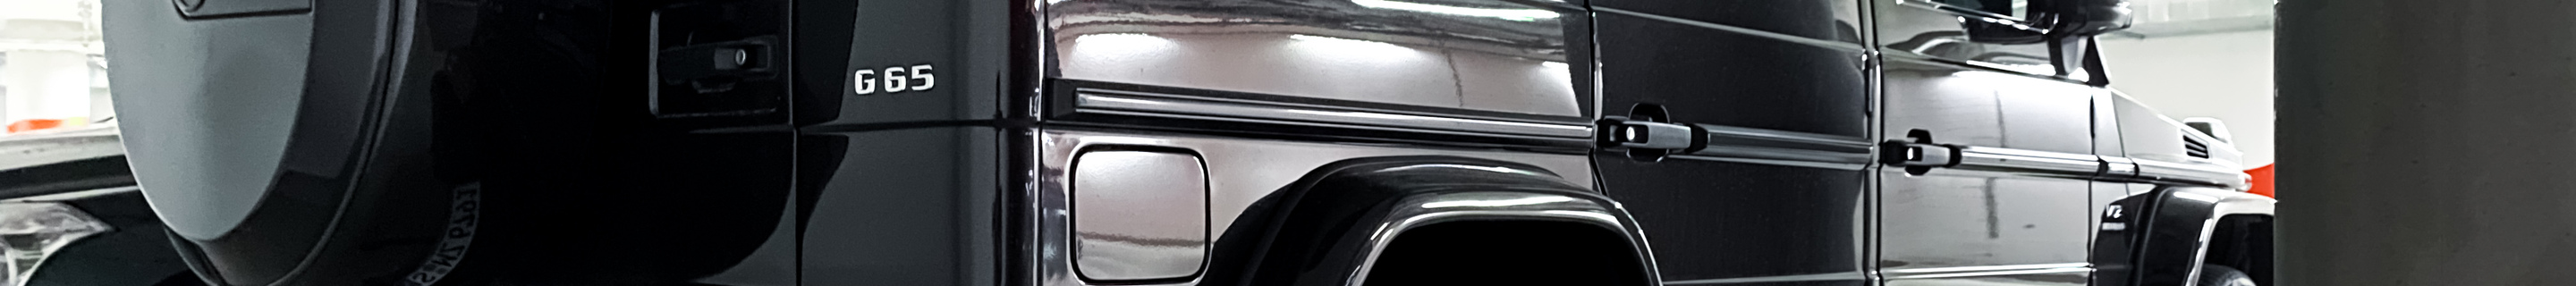 Mercedes-AMG G 65 2016 Edition 463